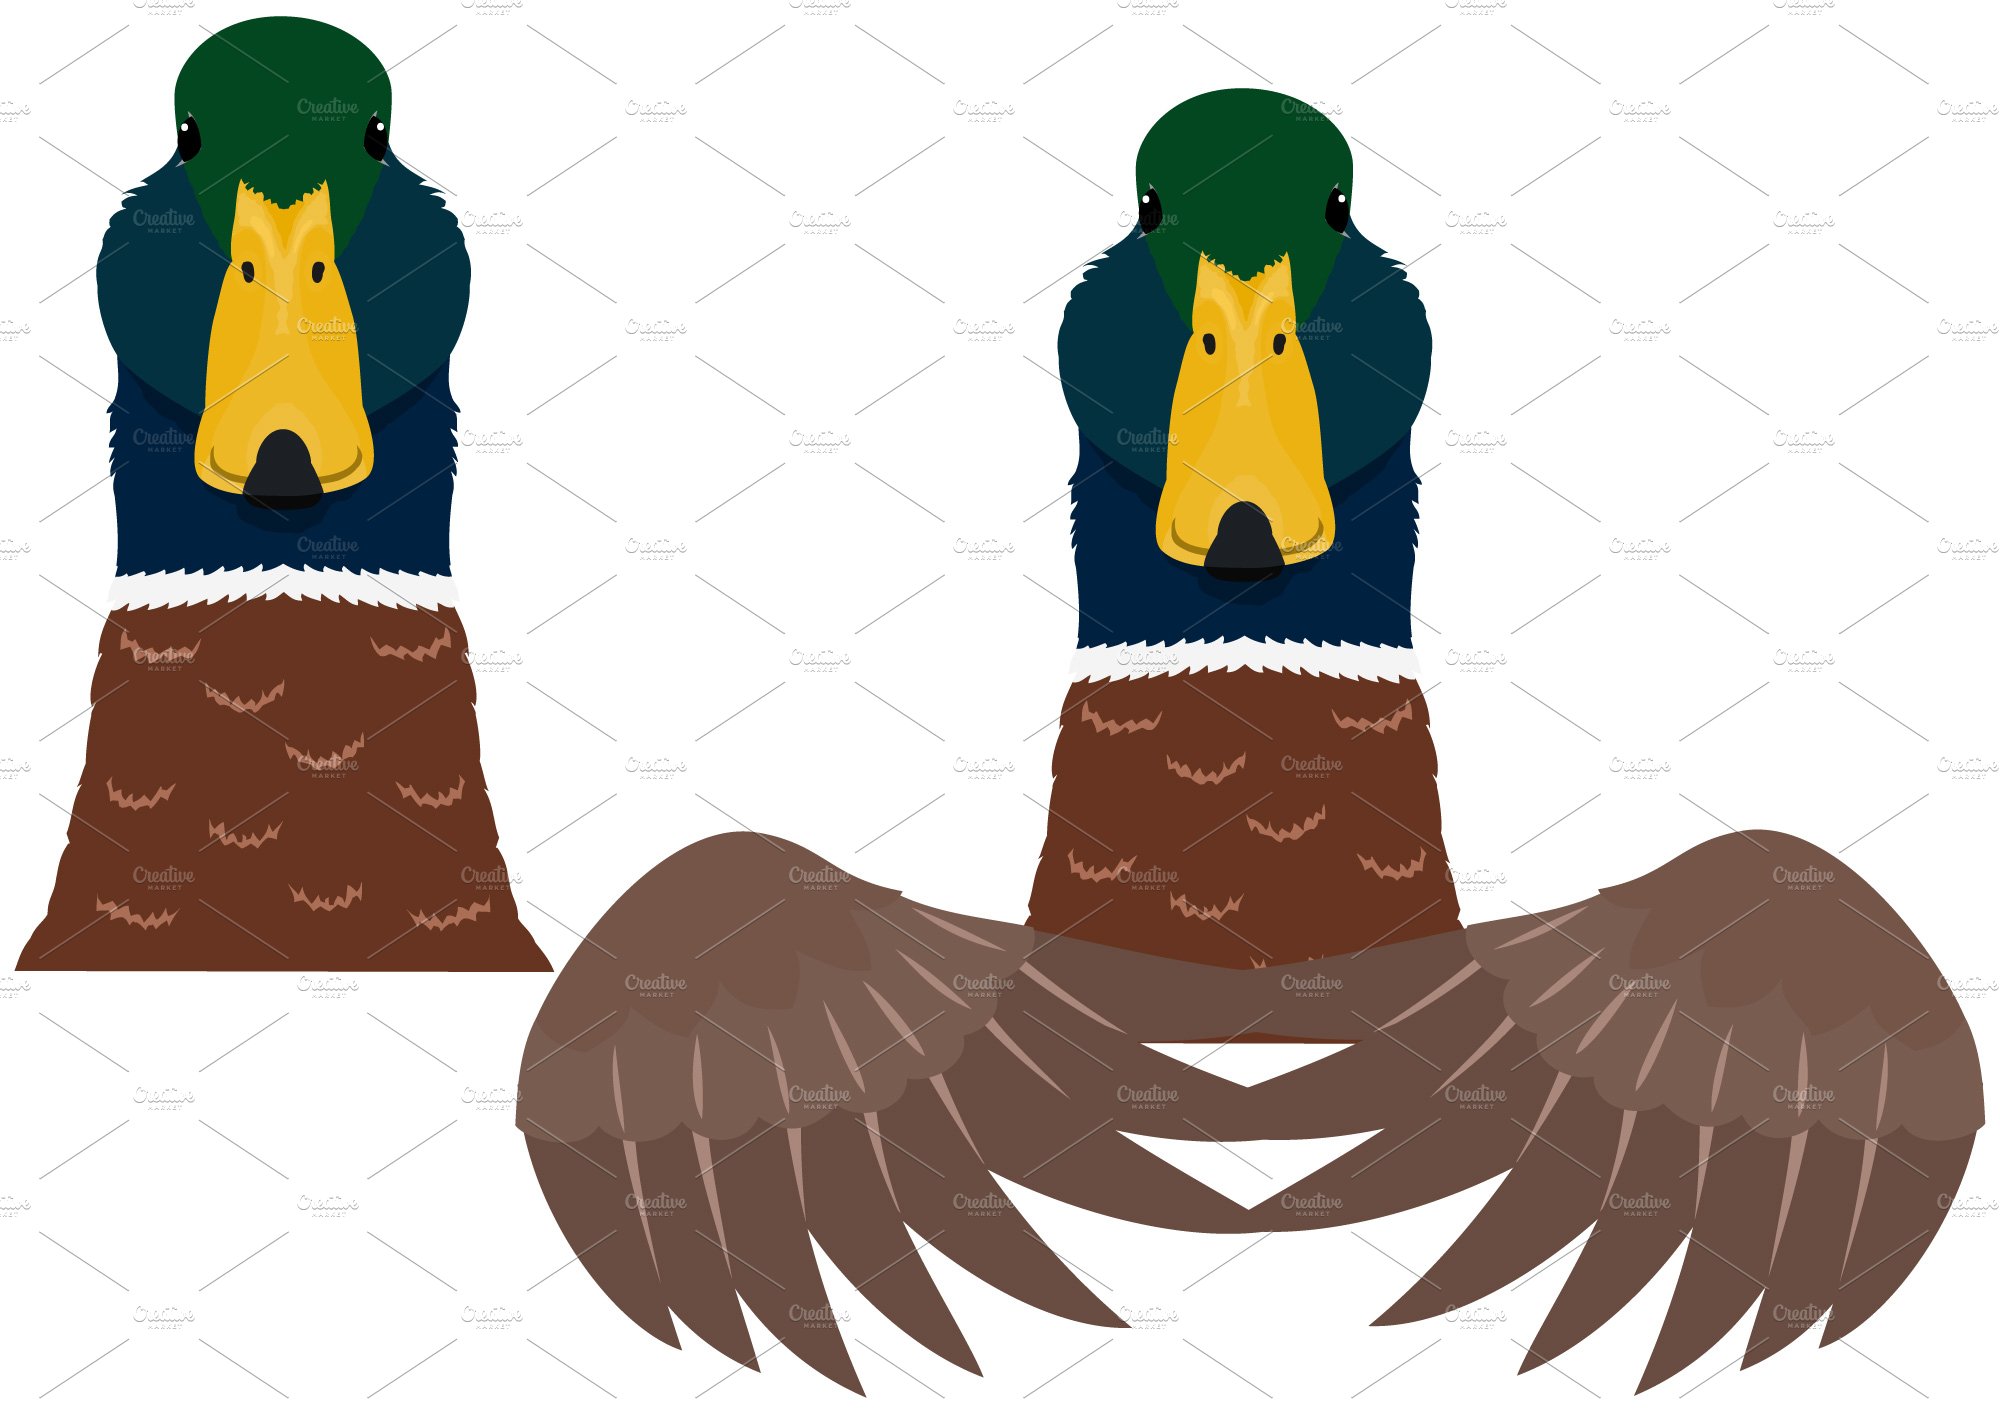 mallard duck head & upper body cover image.